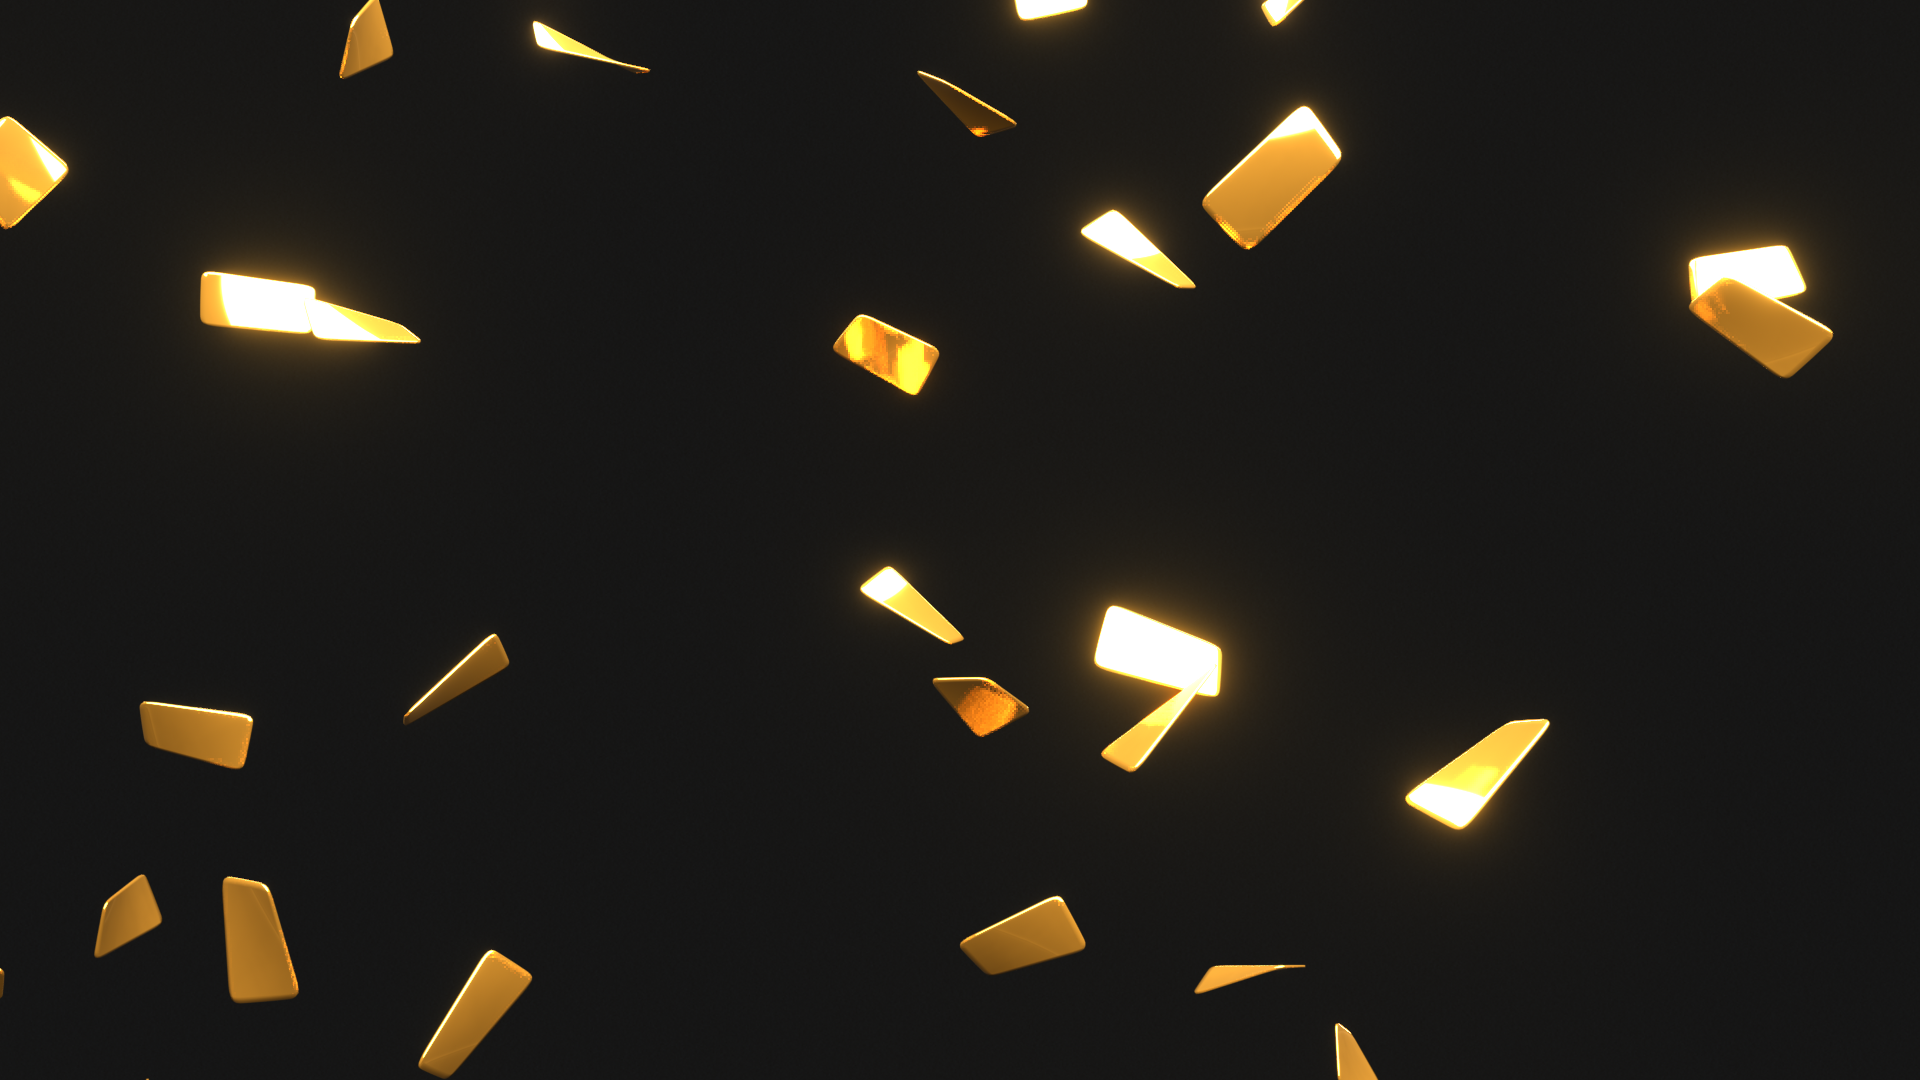 gold confetti clipart animations